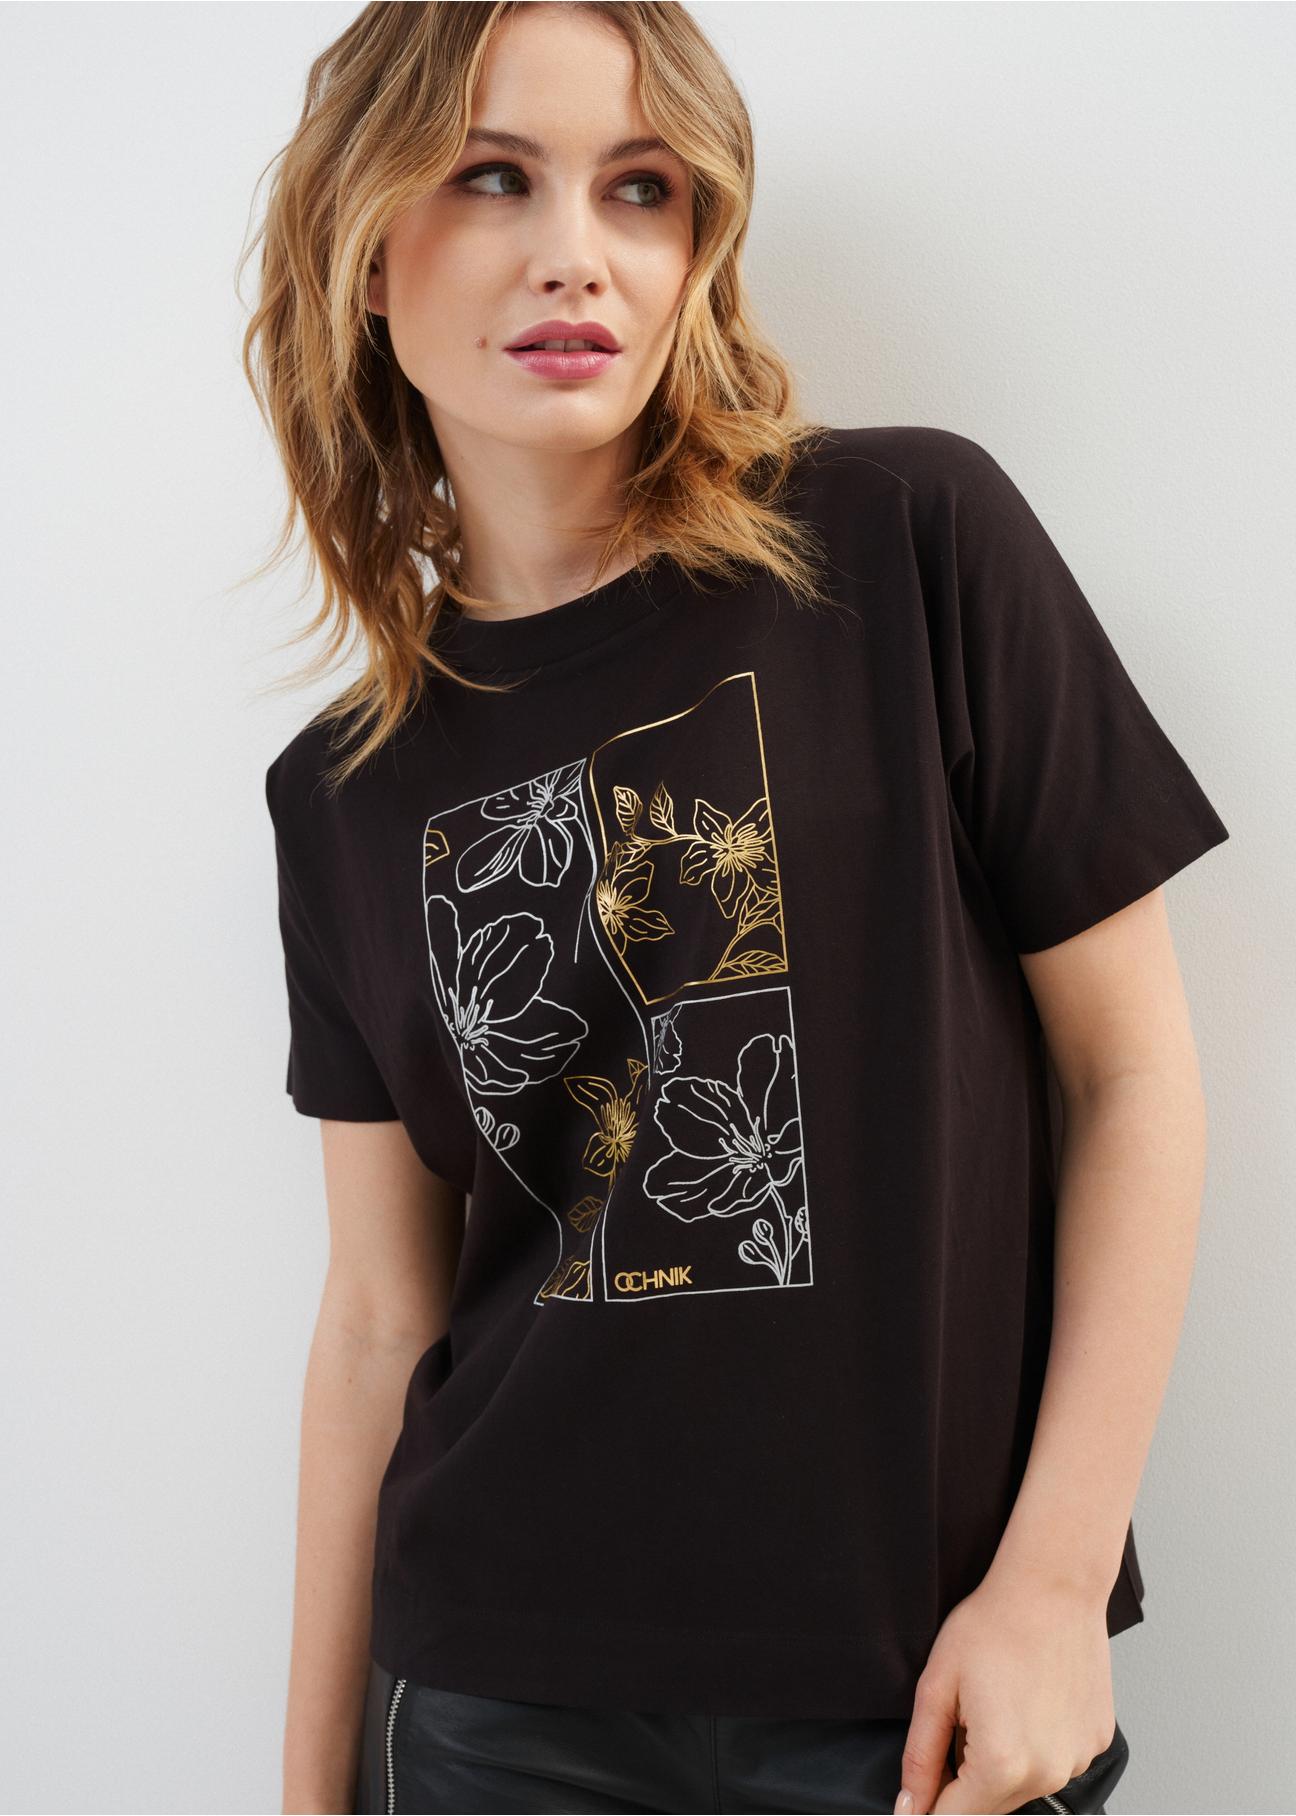 Czarny bawełniany T-shirt damski z aplikacją TSHDT-0117-99(Z23)